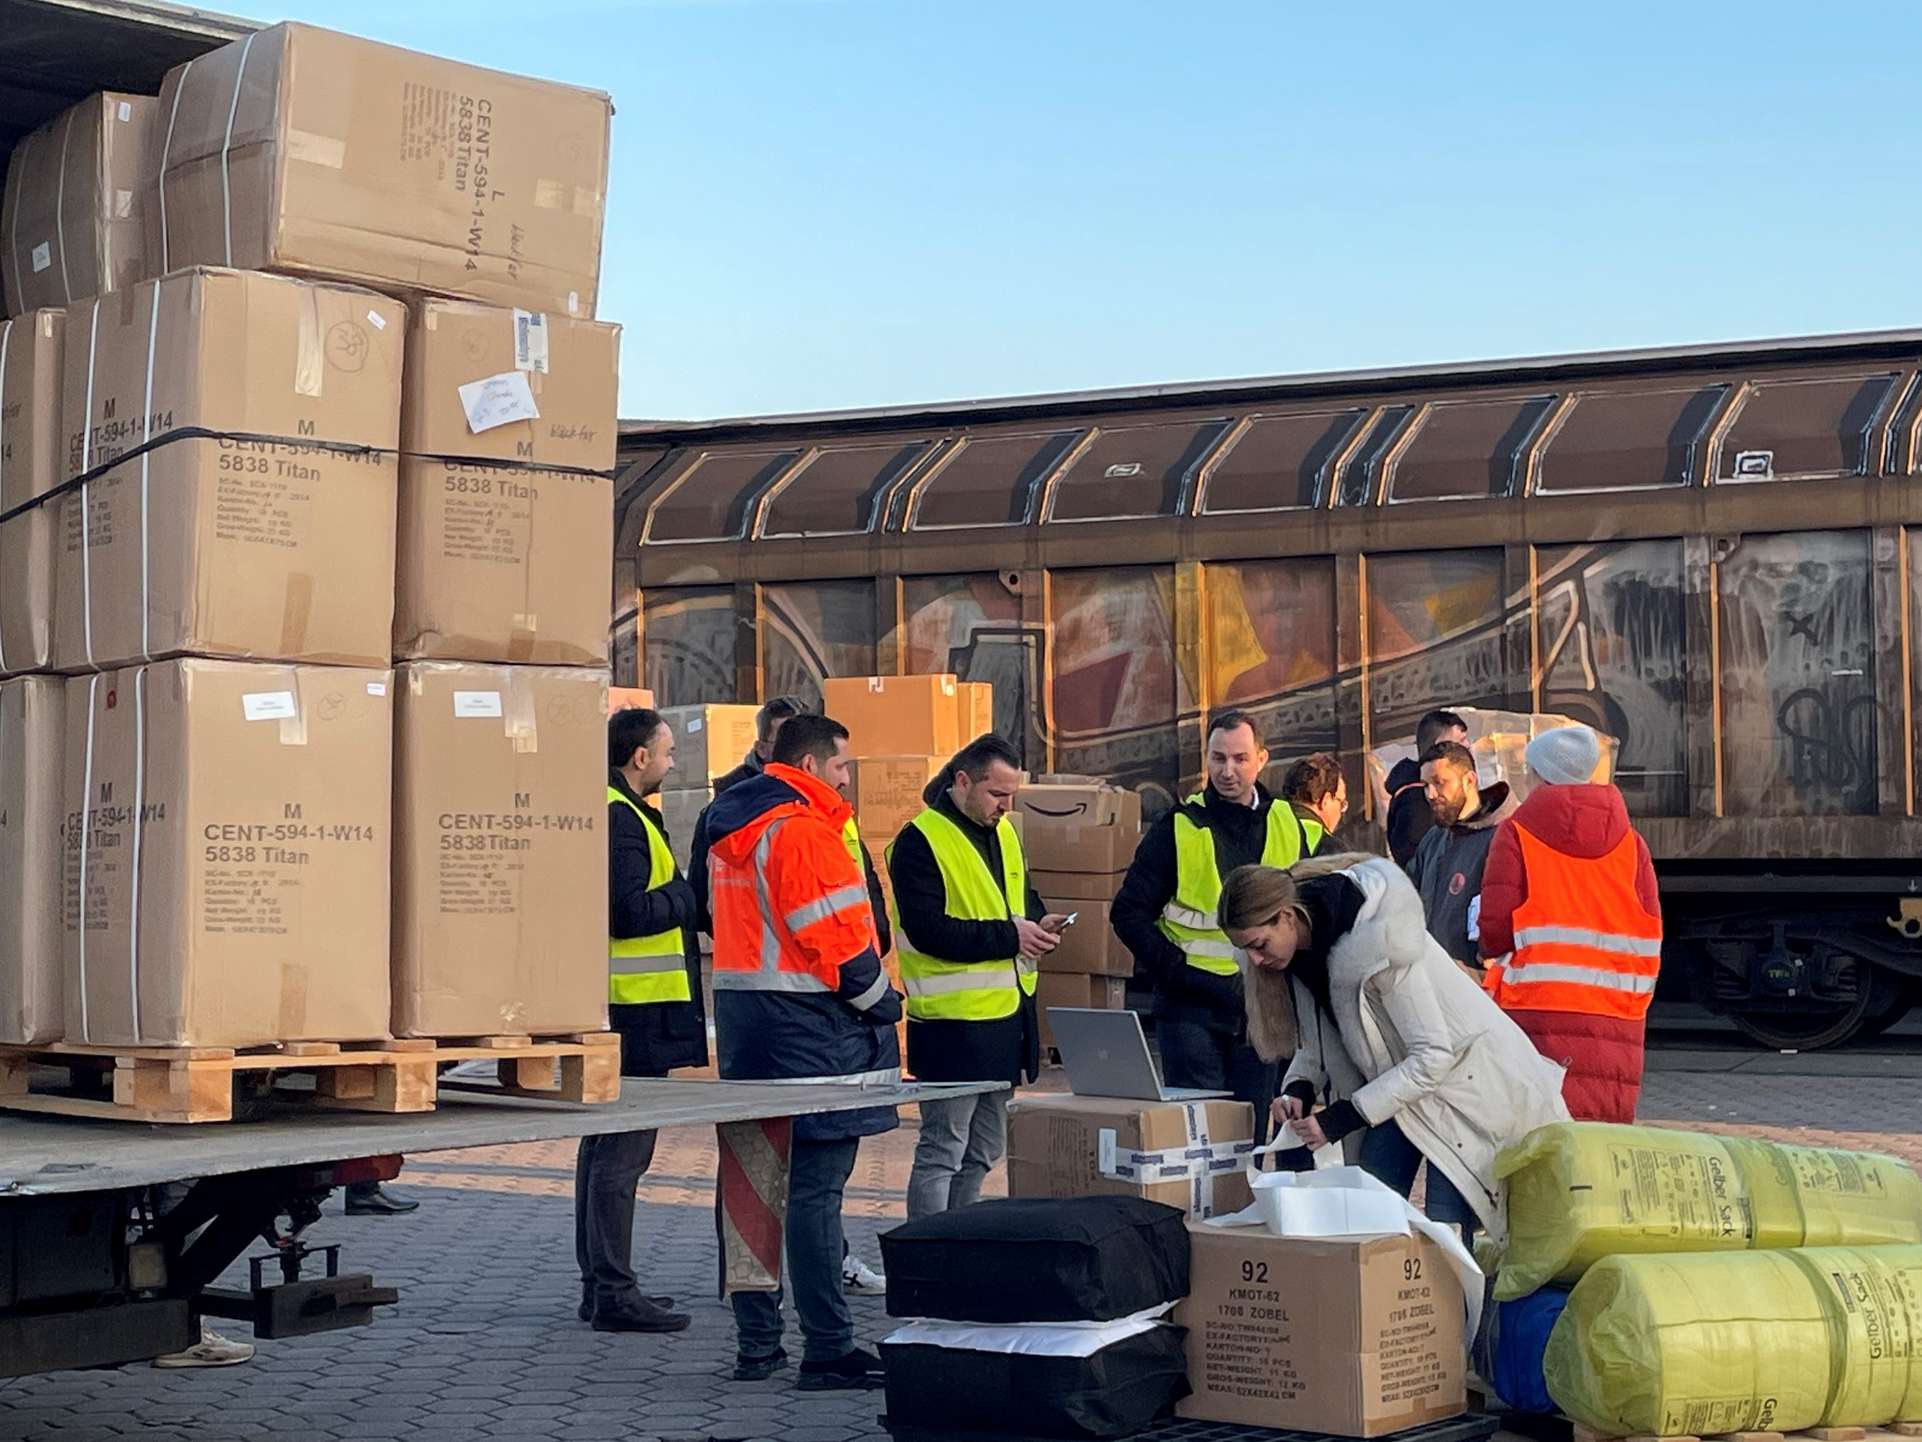 Warenspenden auf dem Weg in die Türkei. Foto: ASB Hamburg.